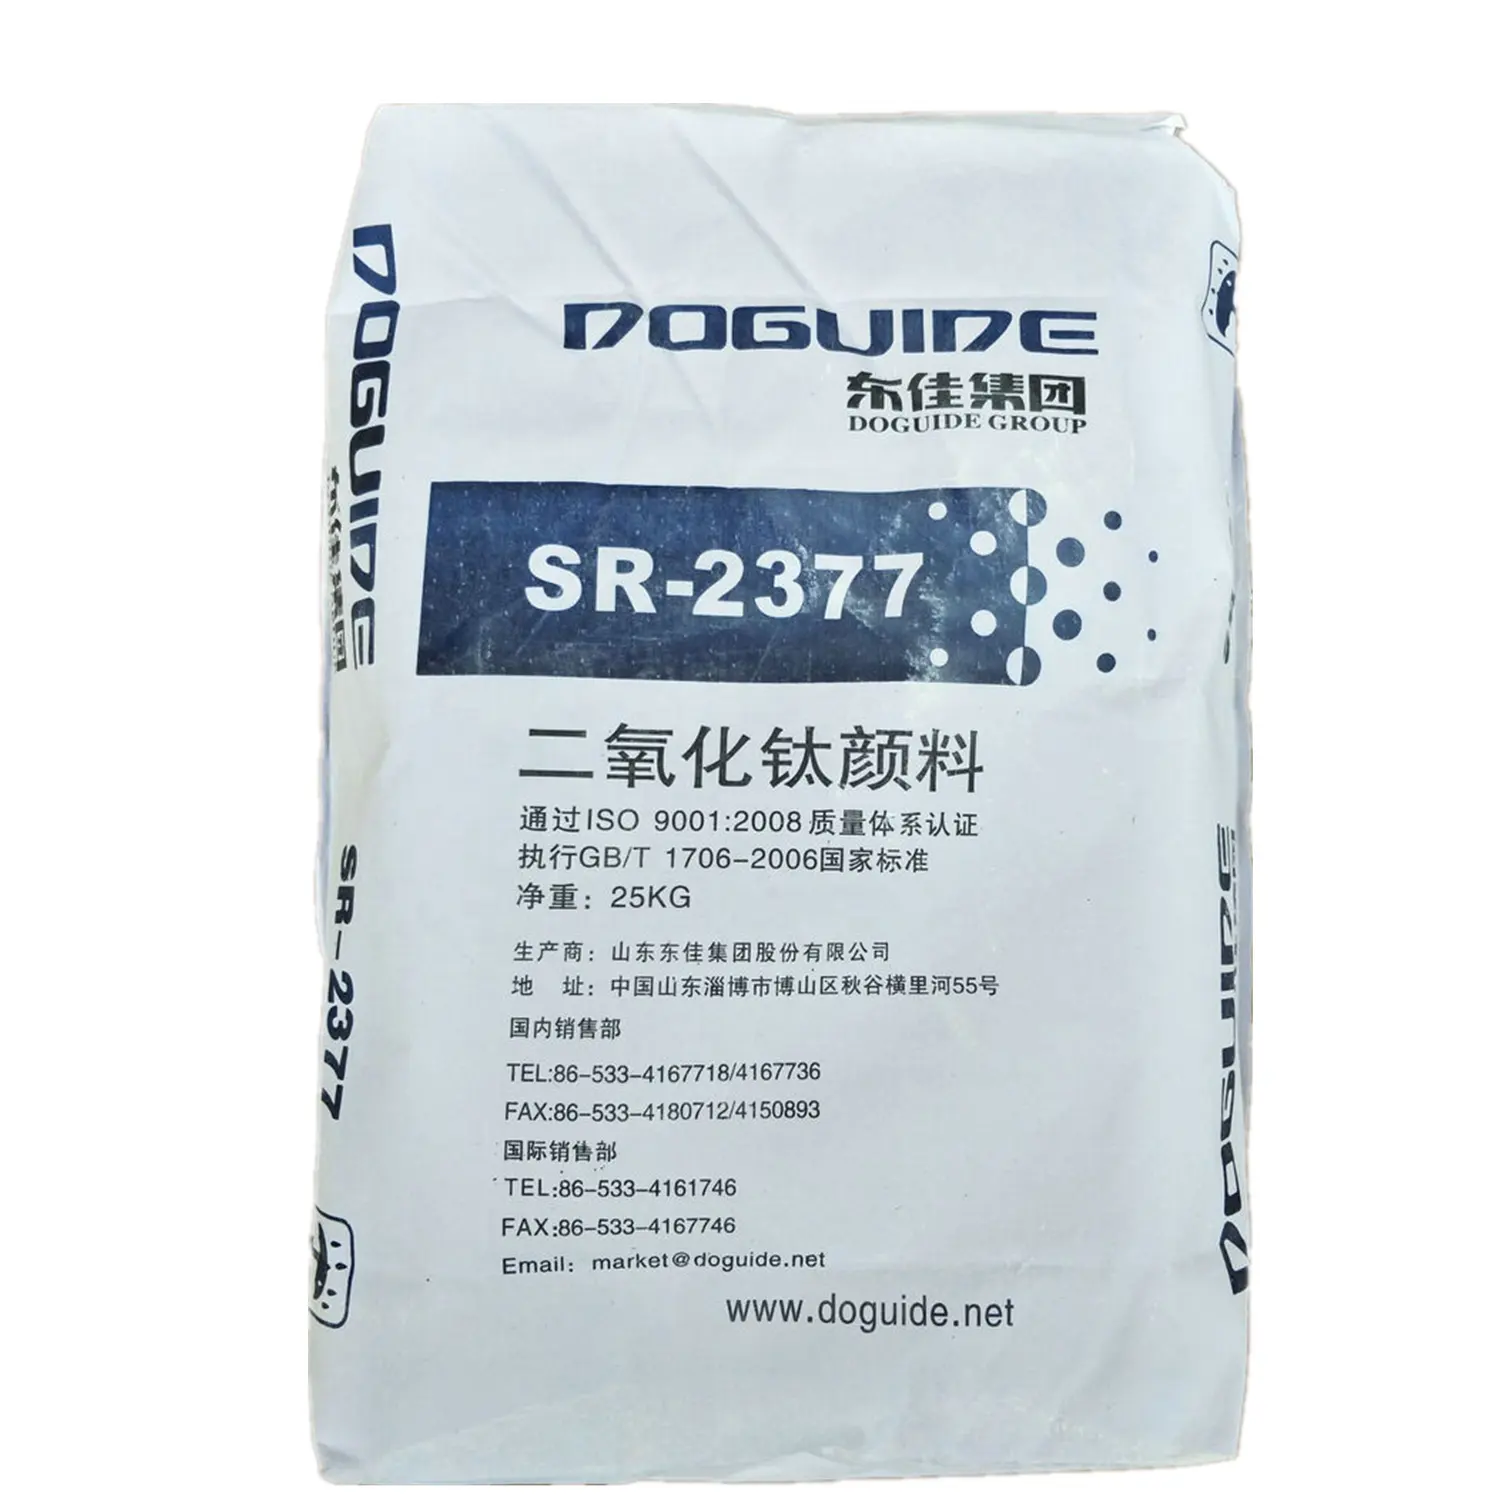 이산화탄소 루틸 SR2377 저렴한 가격 Doguide Tio2 티타늄 화이트 파우더 산업 학년 페인트 코팅 화이트 안료 99% 13463-67-7